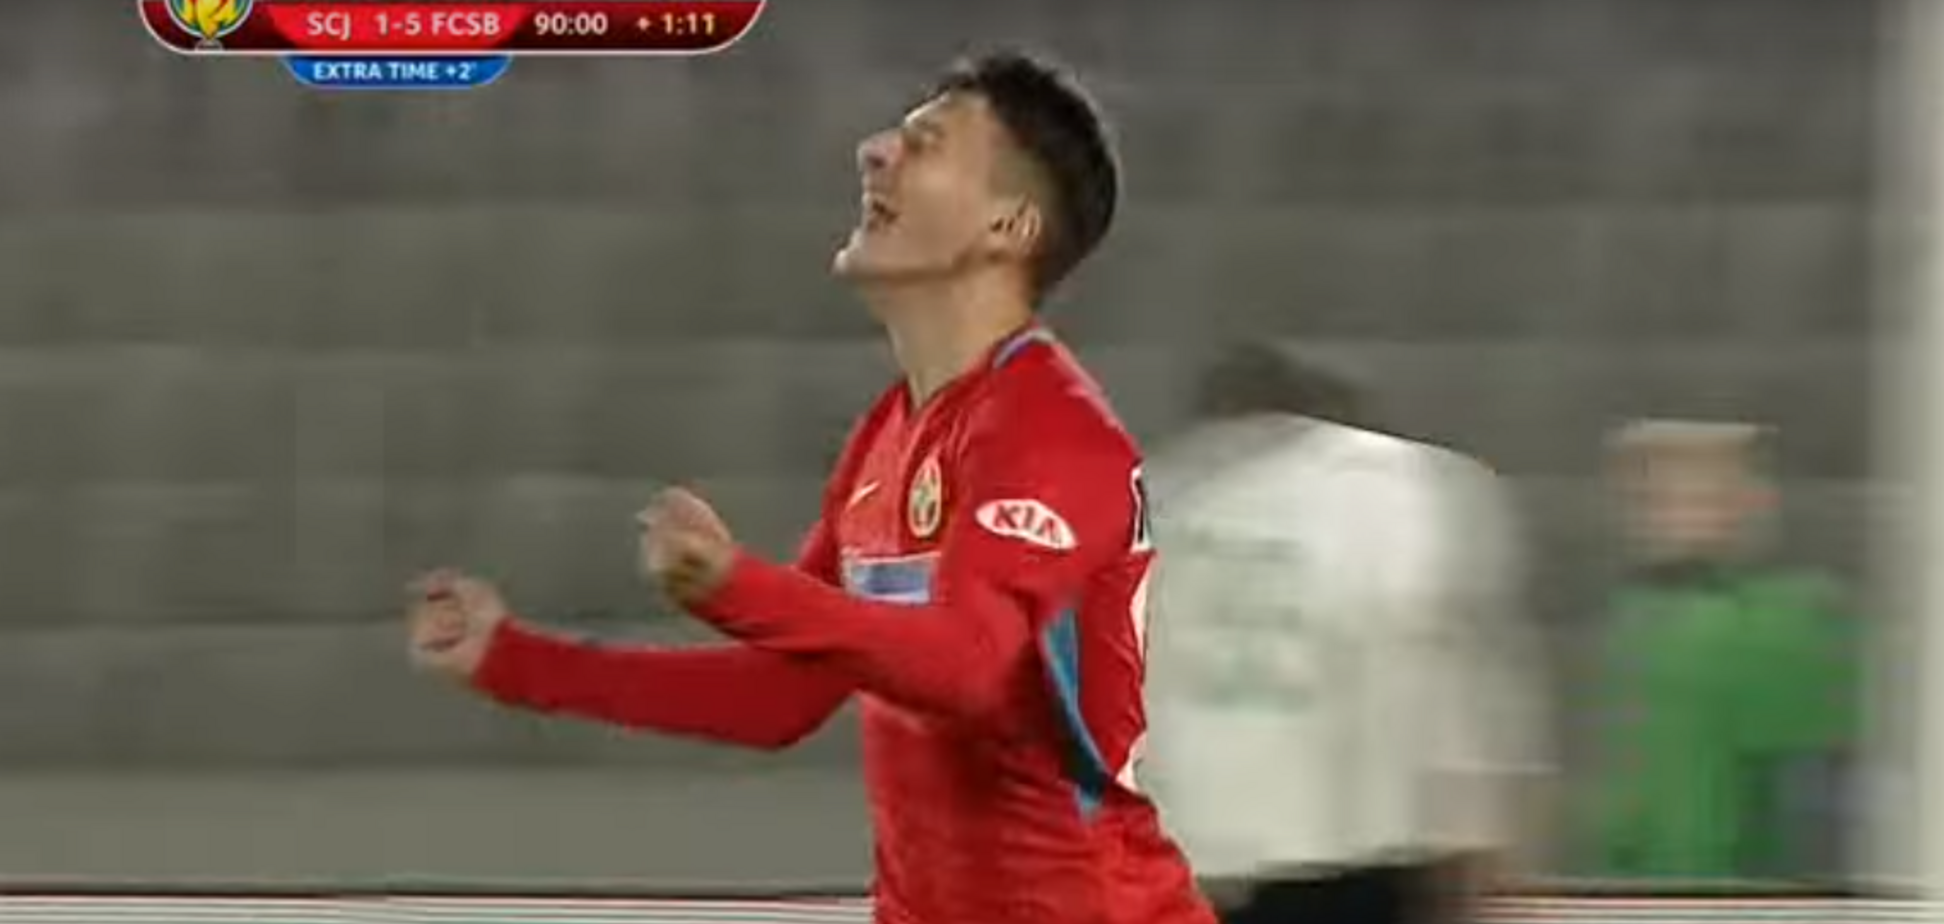 Ребенок забил гол в Кубке Румынии, посрамив взрослых футболистов: опубликовано видео